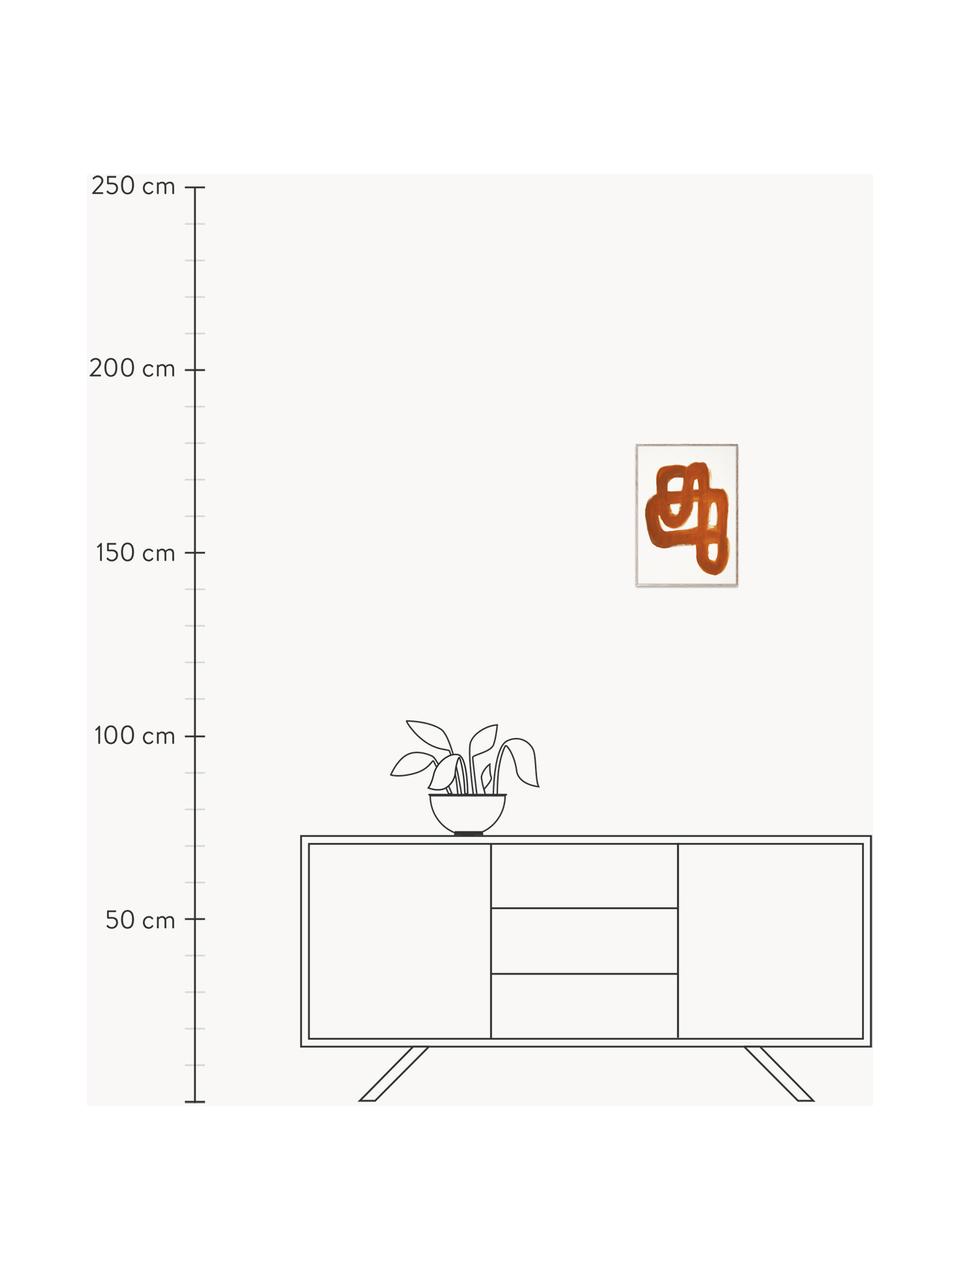 Plagát Orange Brush, 230 g matný rafinovaný papier, digitálna tlač s 12 farbami.
Tento produkt je vyrobený z trvalo udržateľného dreva s certifikátom FSC®, Terakotová, biela, Š 30 x V 40 cm